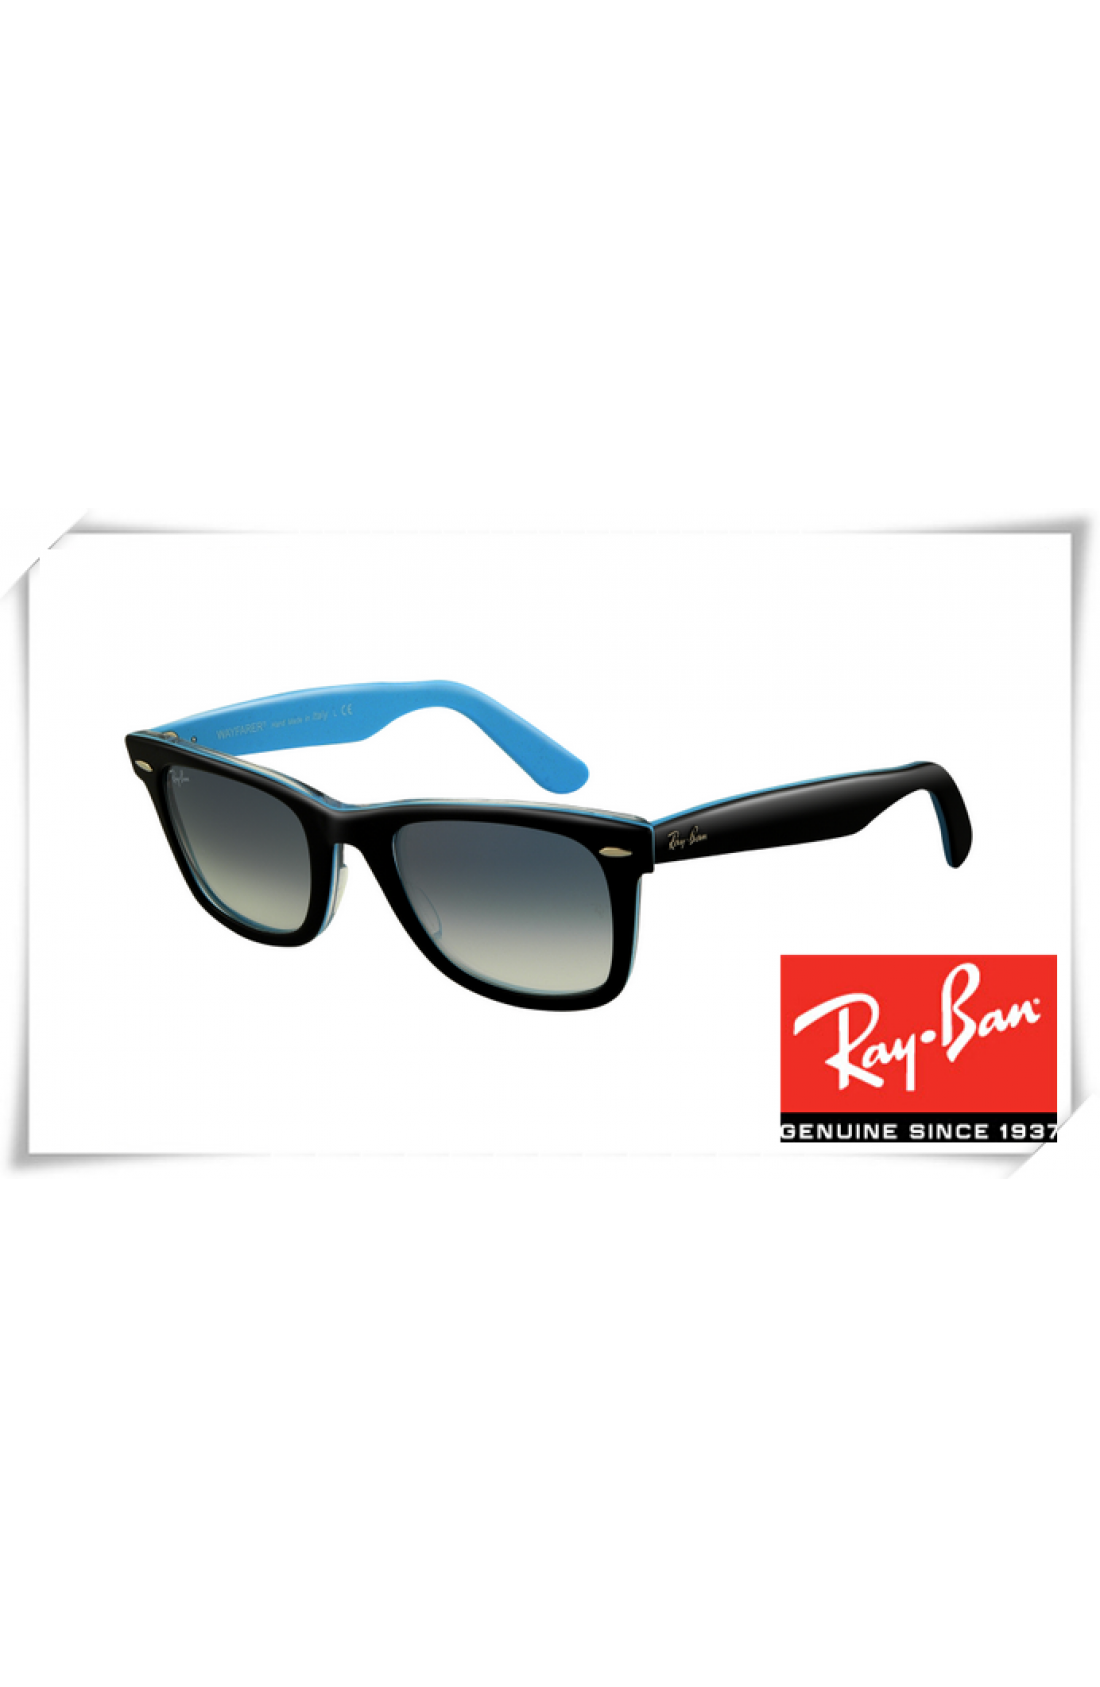 blue frame wayfarer sunglasses